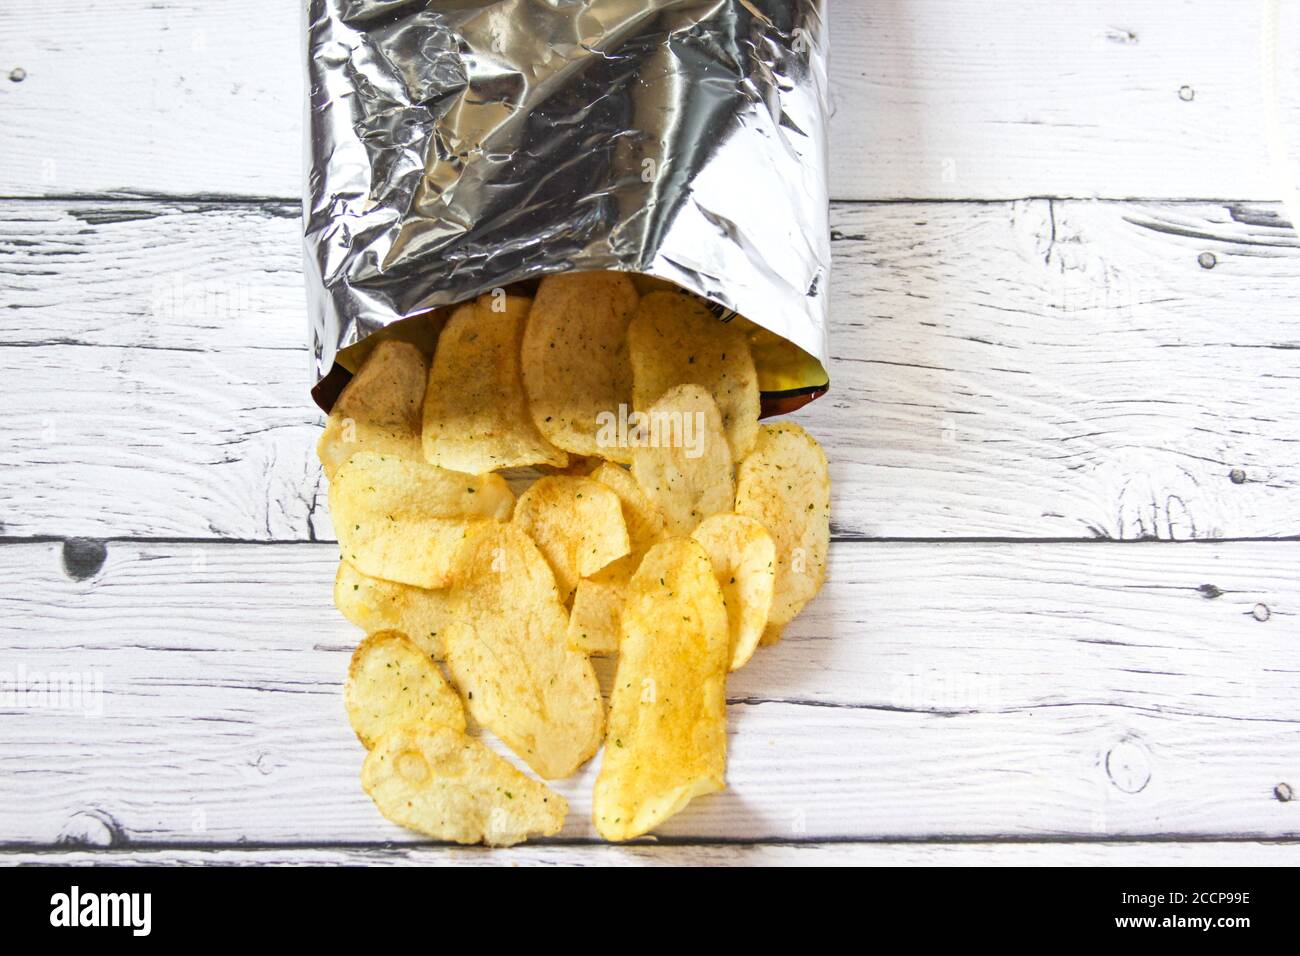 Kartoffelchips und Packung. Verpackung des Chips auf weißem Hintergrund.  Draufsicht Stockfotografie - Alamy